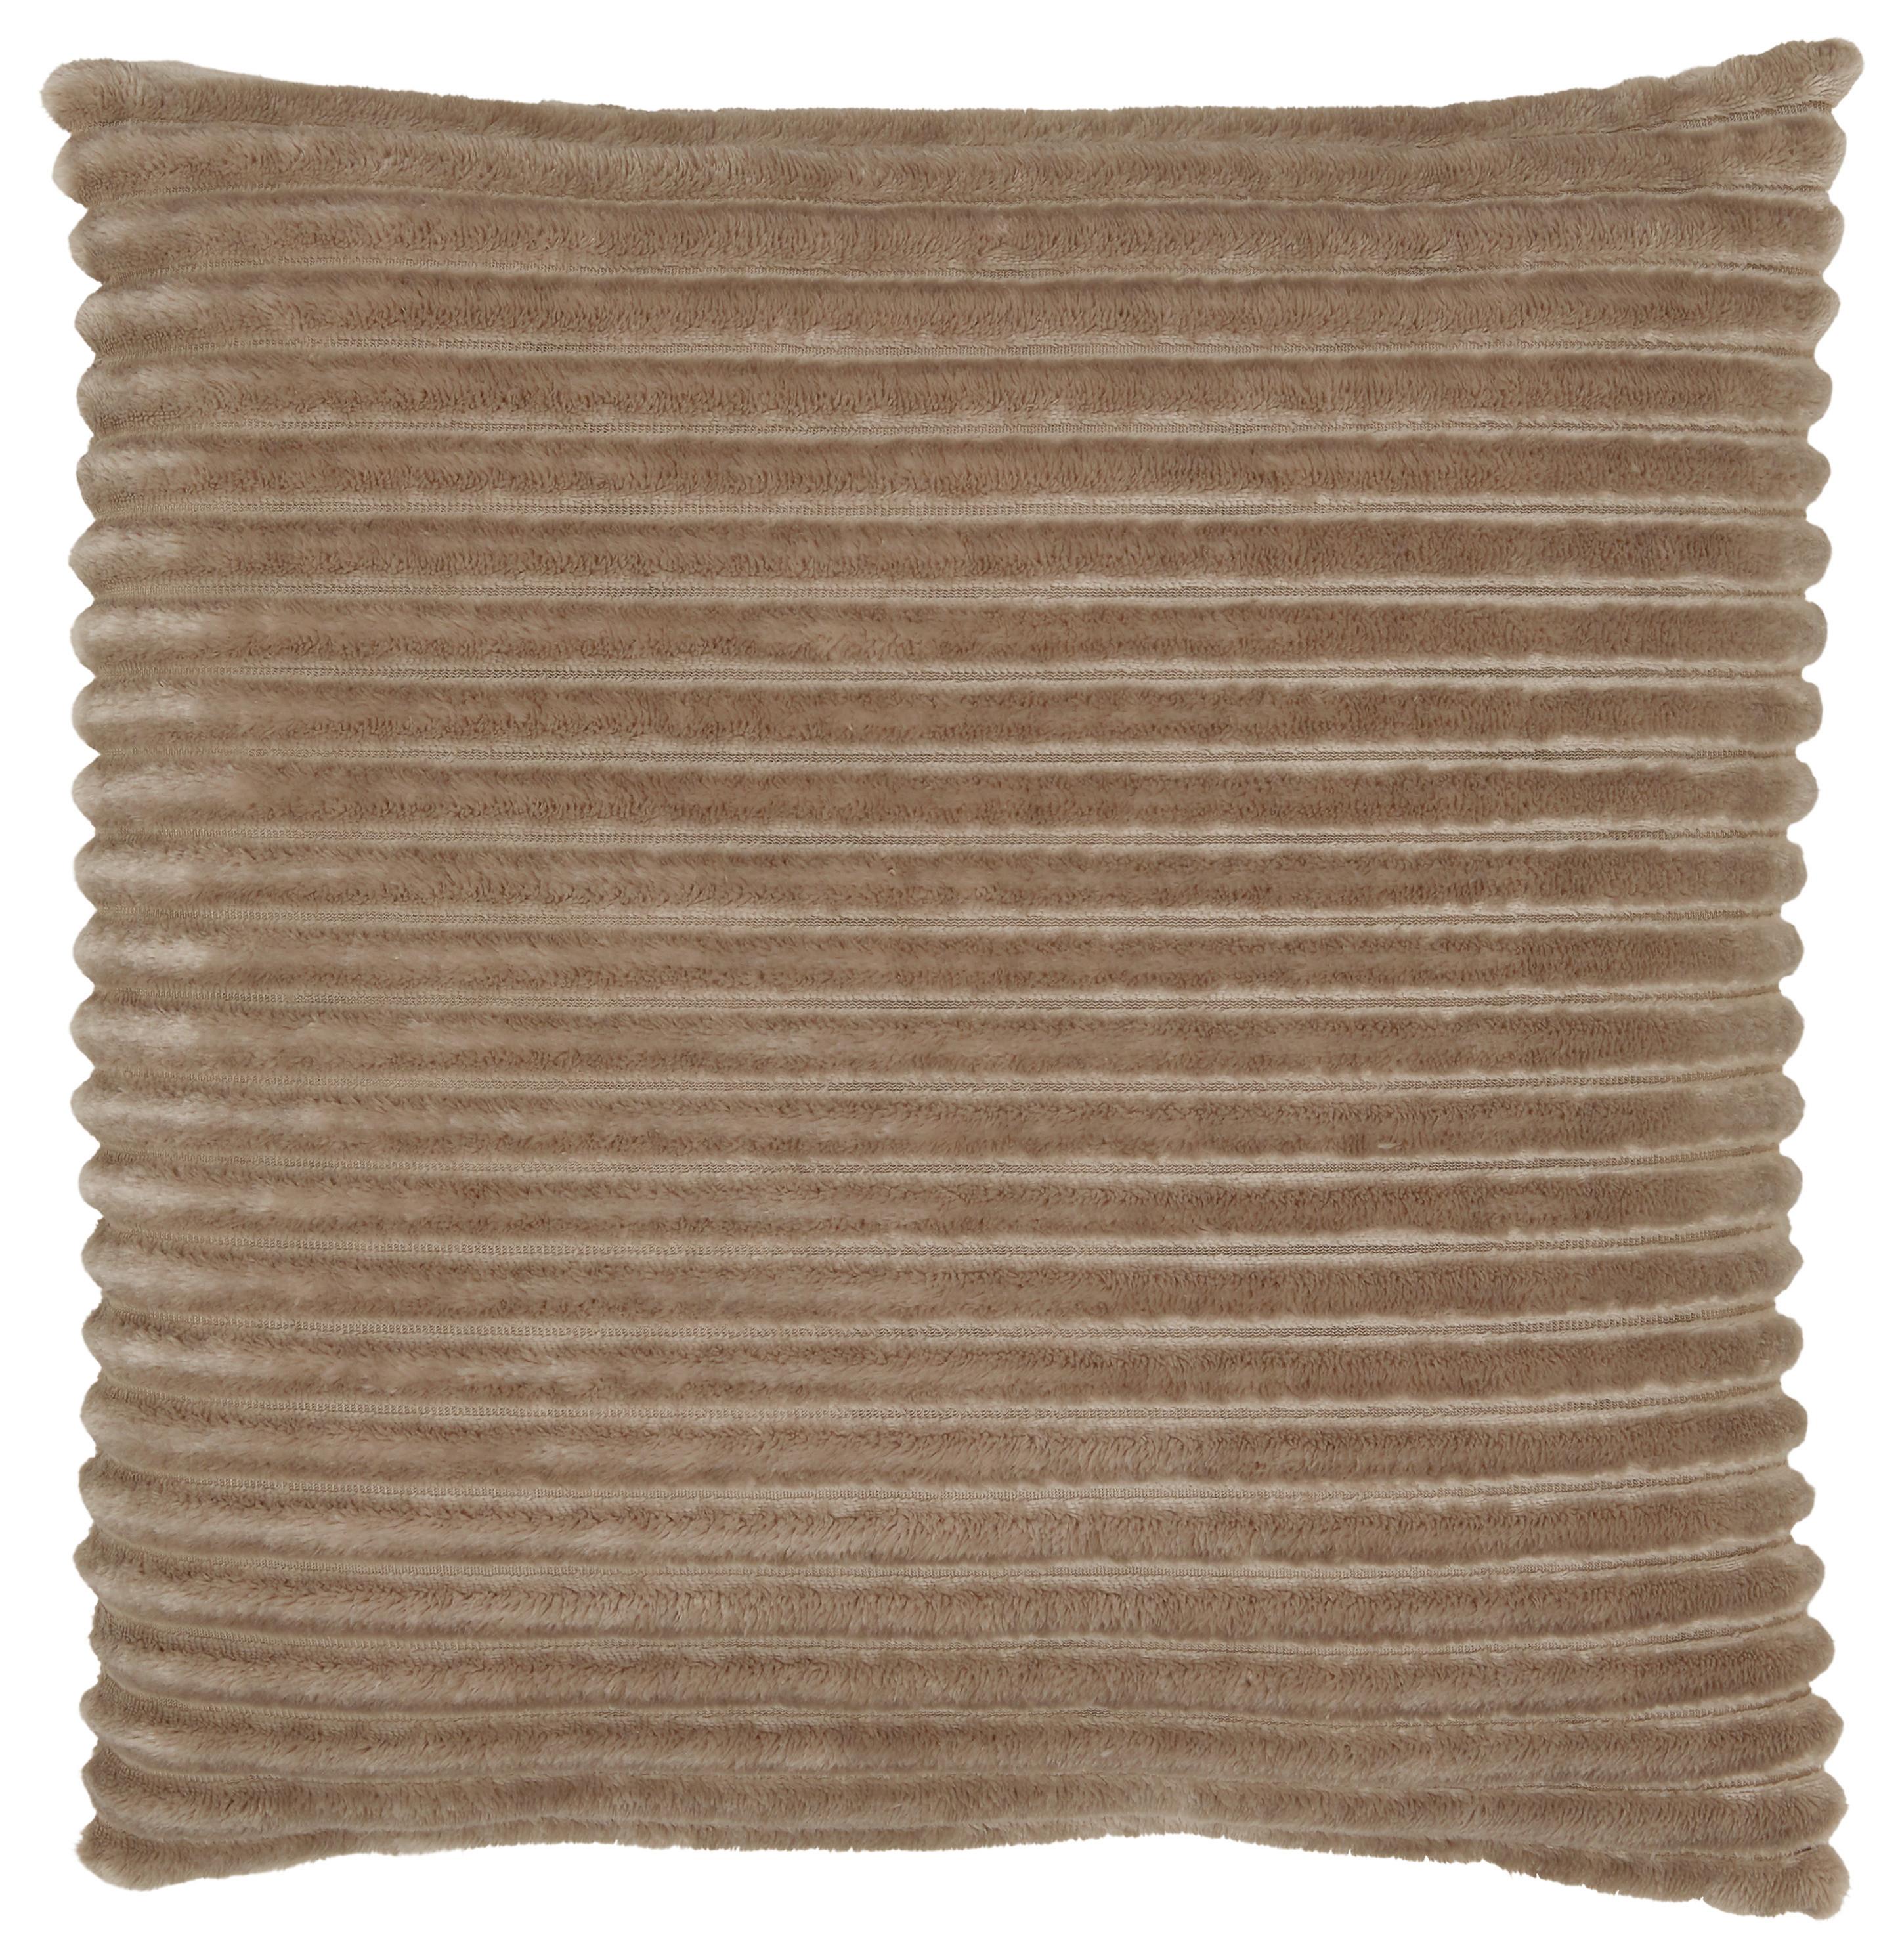 Zierkissen Cordi in Beige ca. 45x45cm - Beige, Konventionell, Textil (45/45cm) - Modern Living